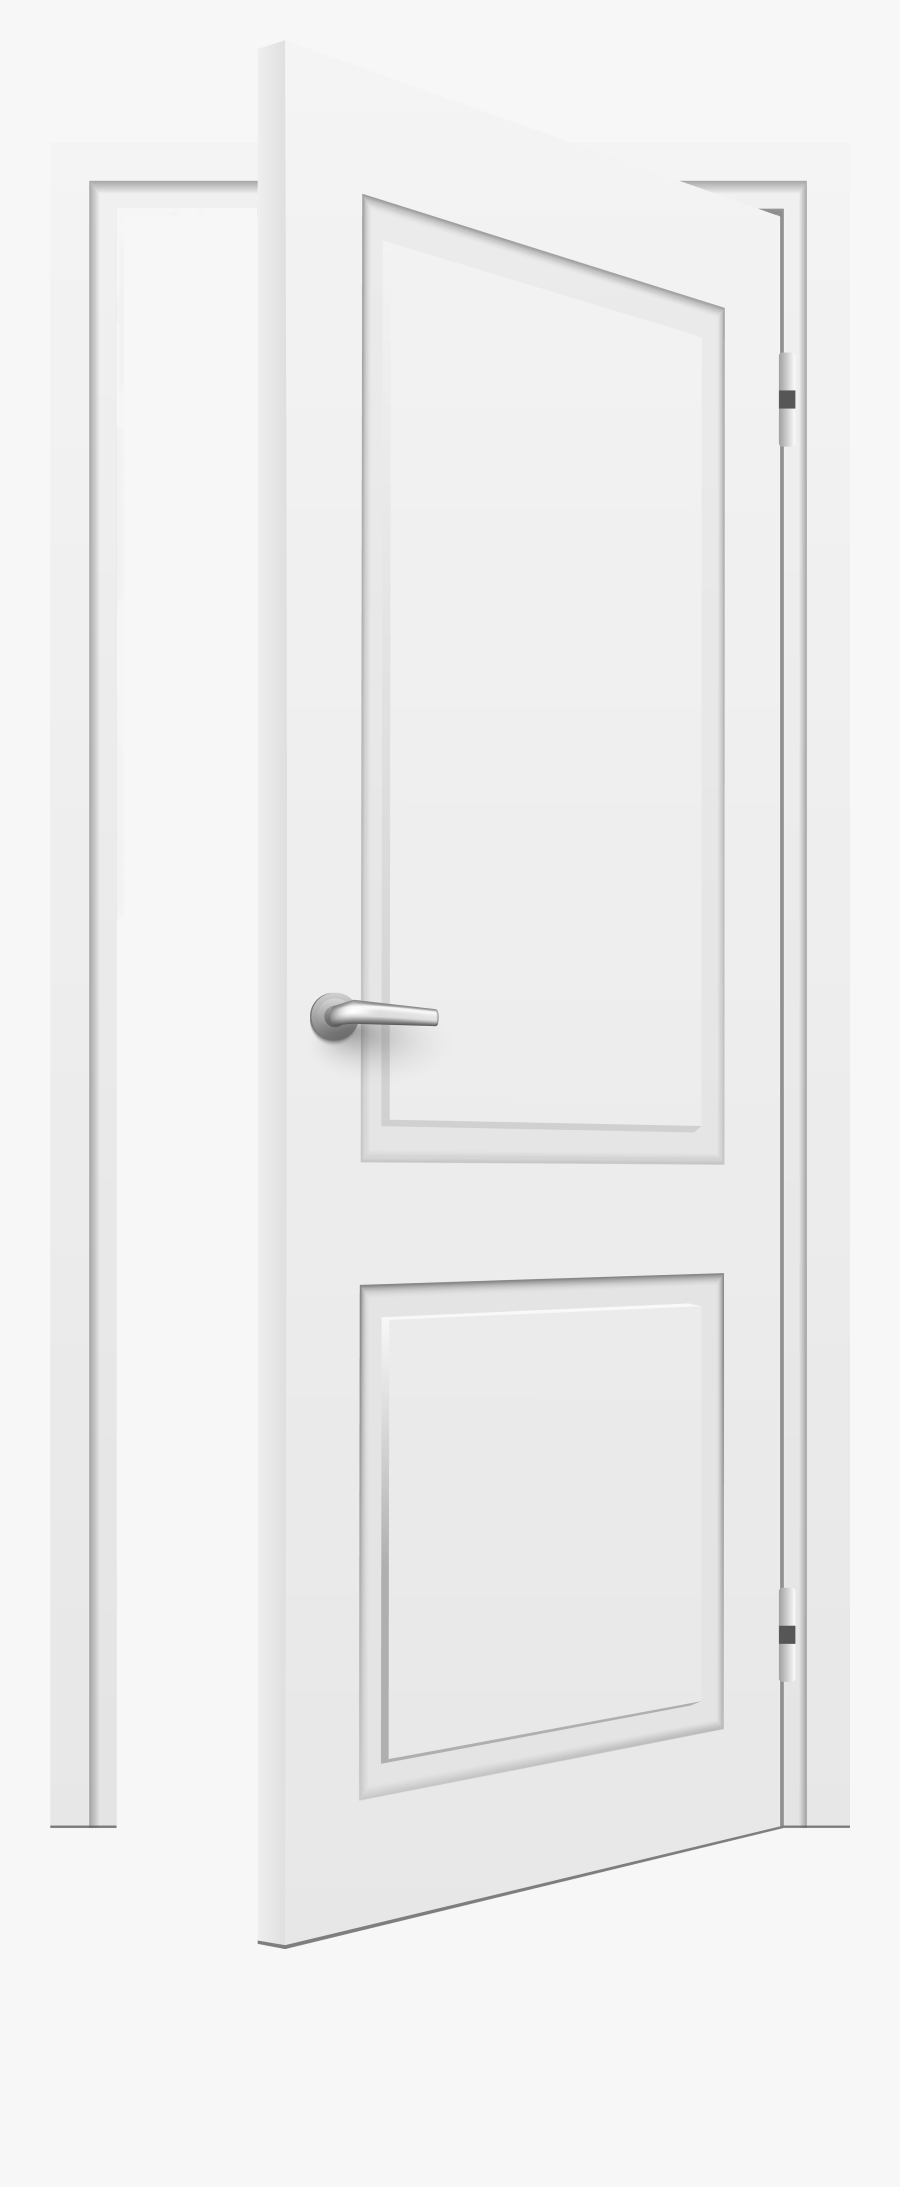 Open Door White Png Clip Art - White Open Door Png, Transparent Clipart